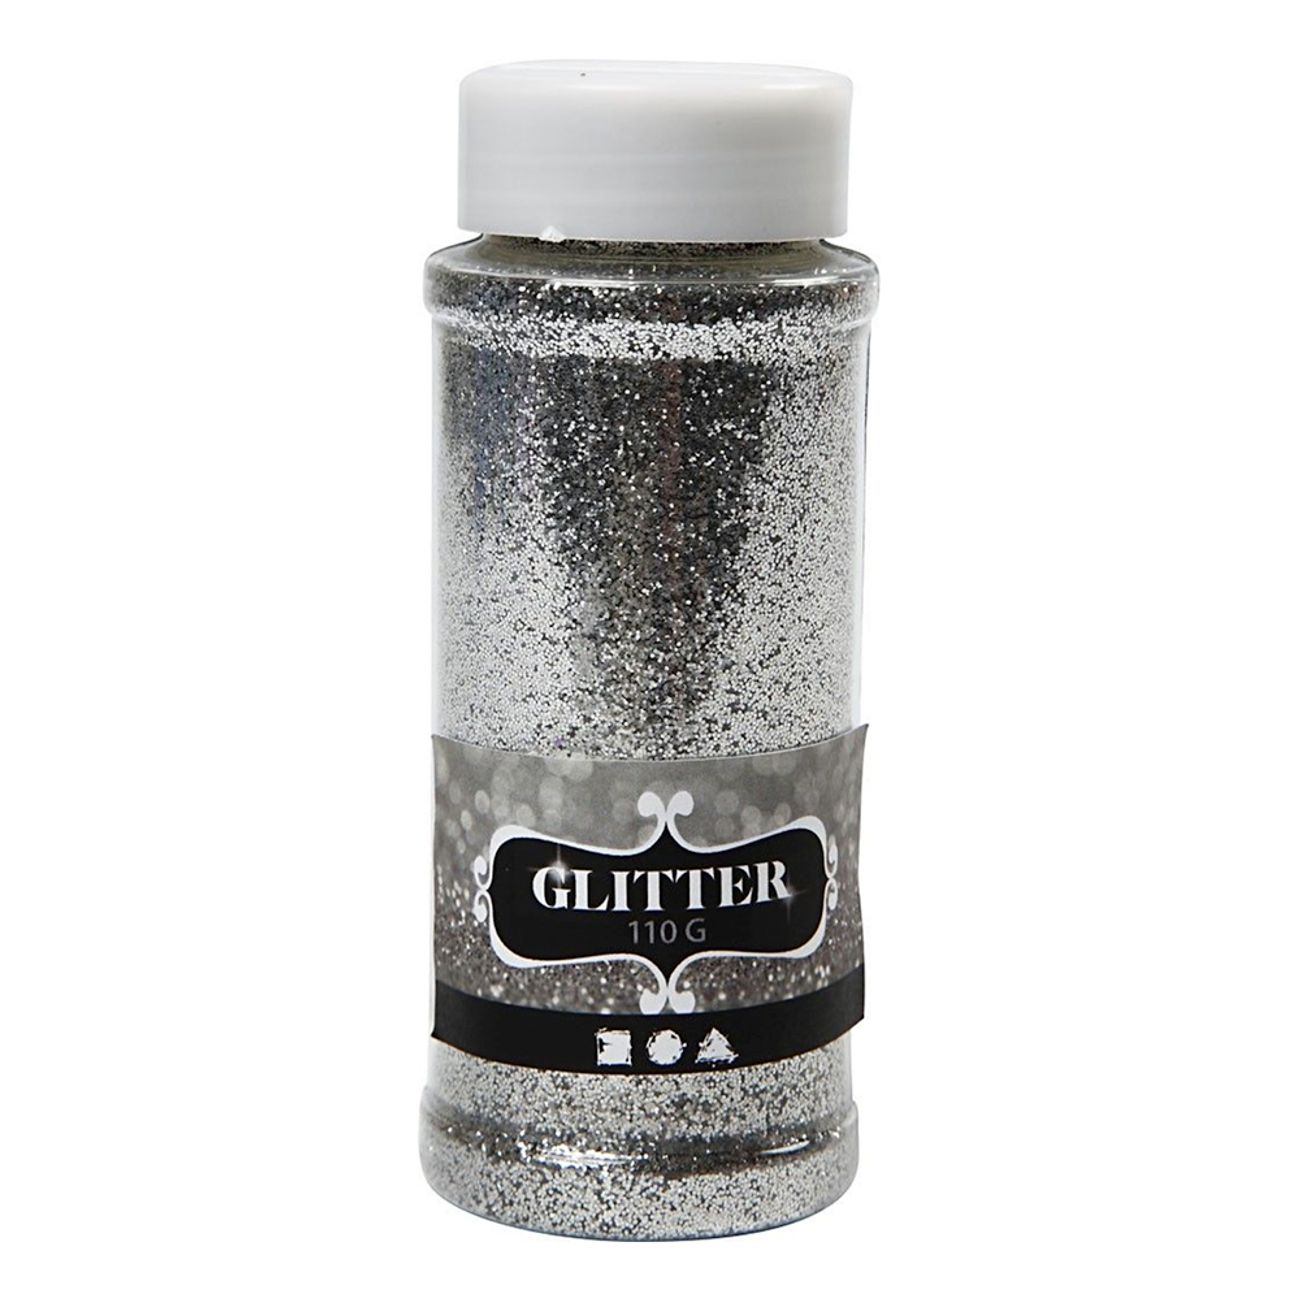 glitter-bla-9